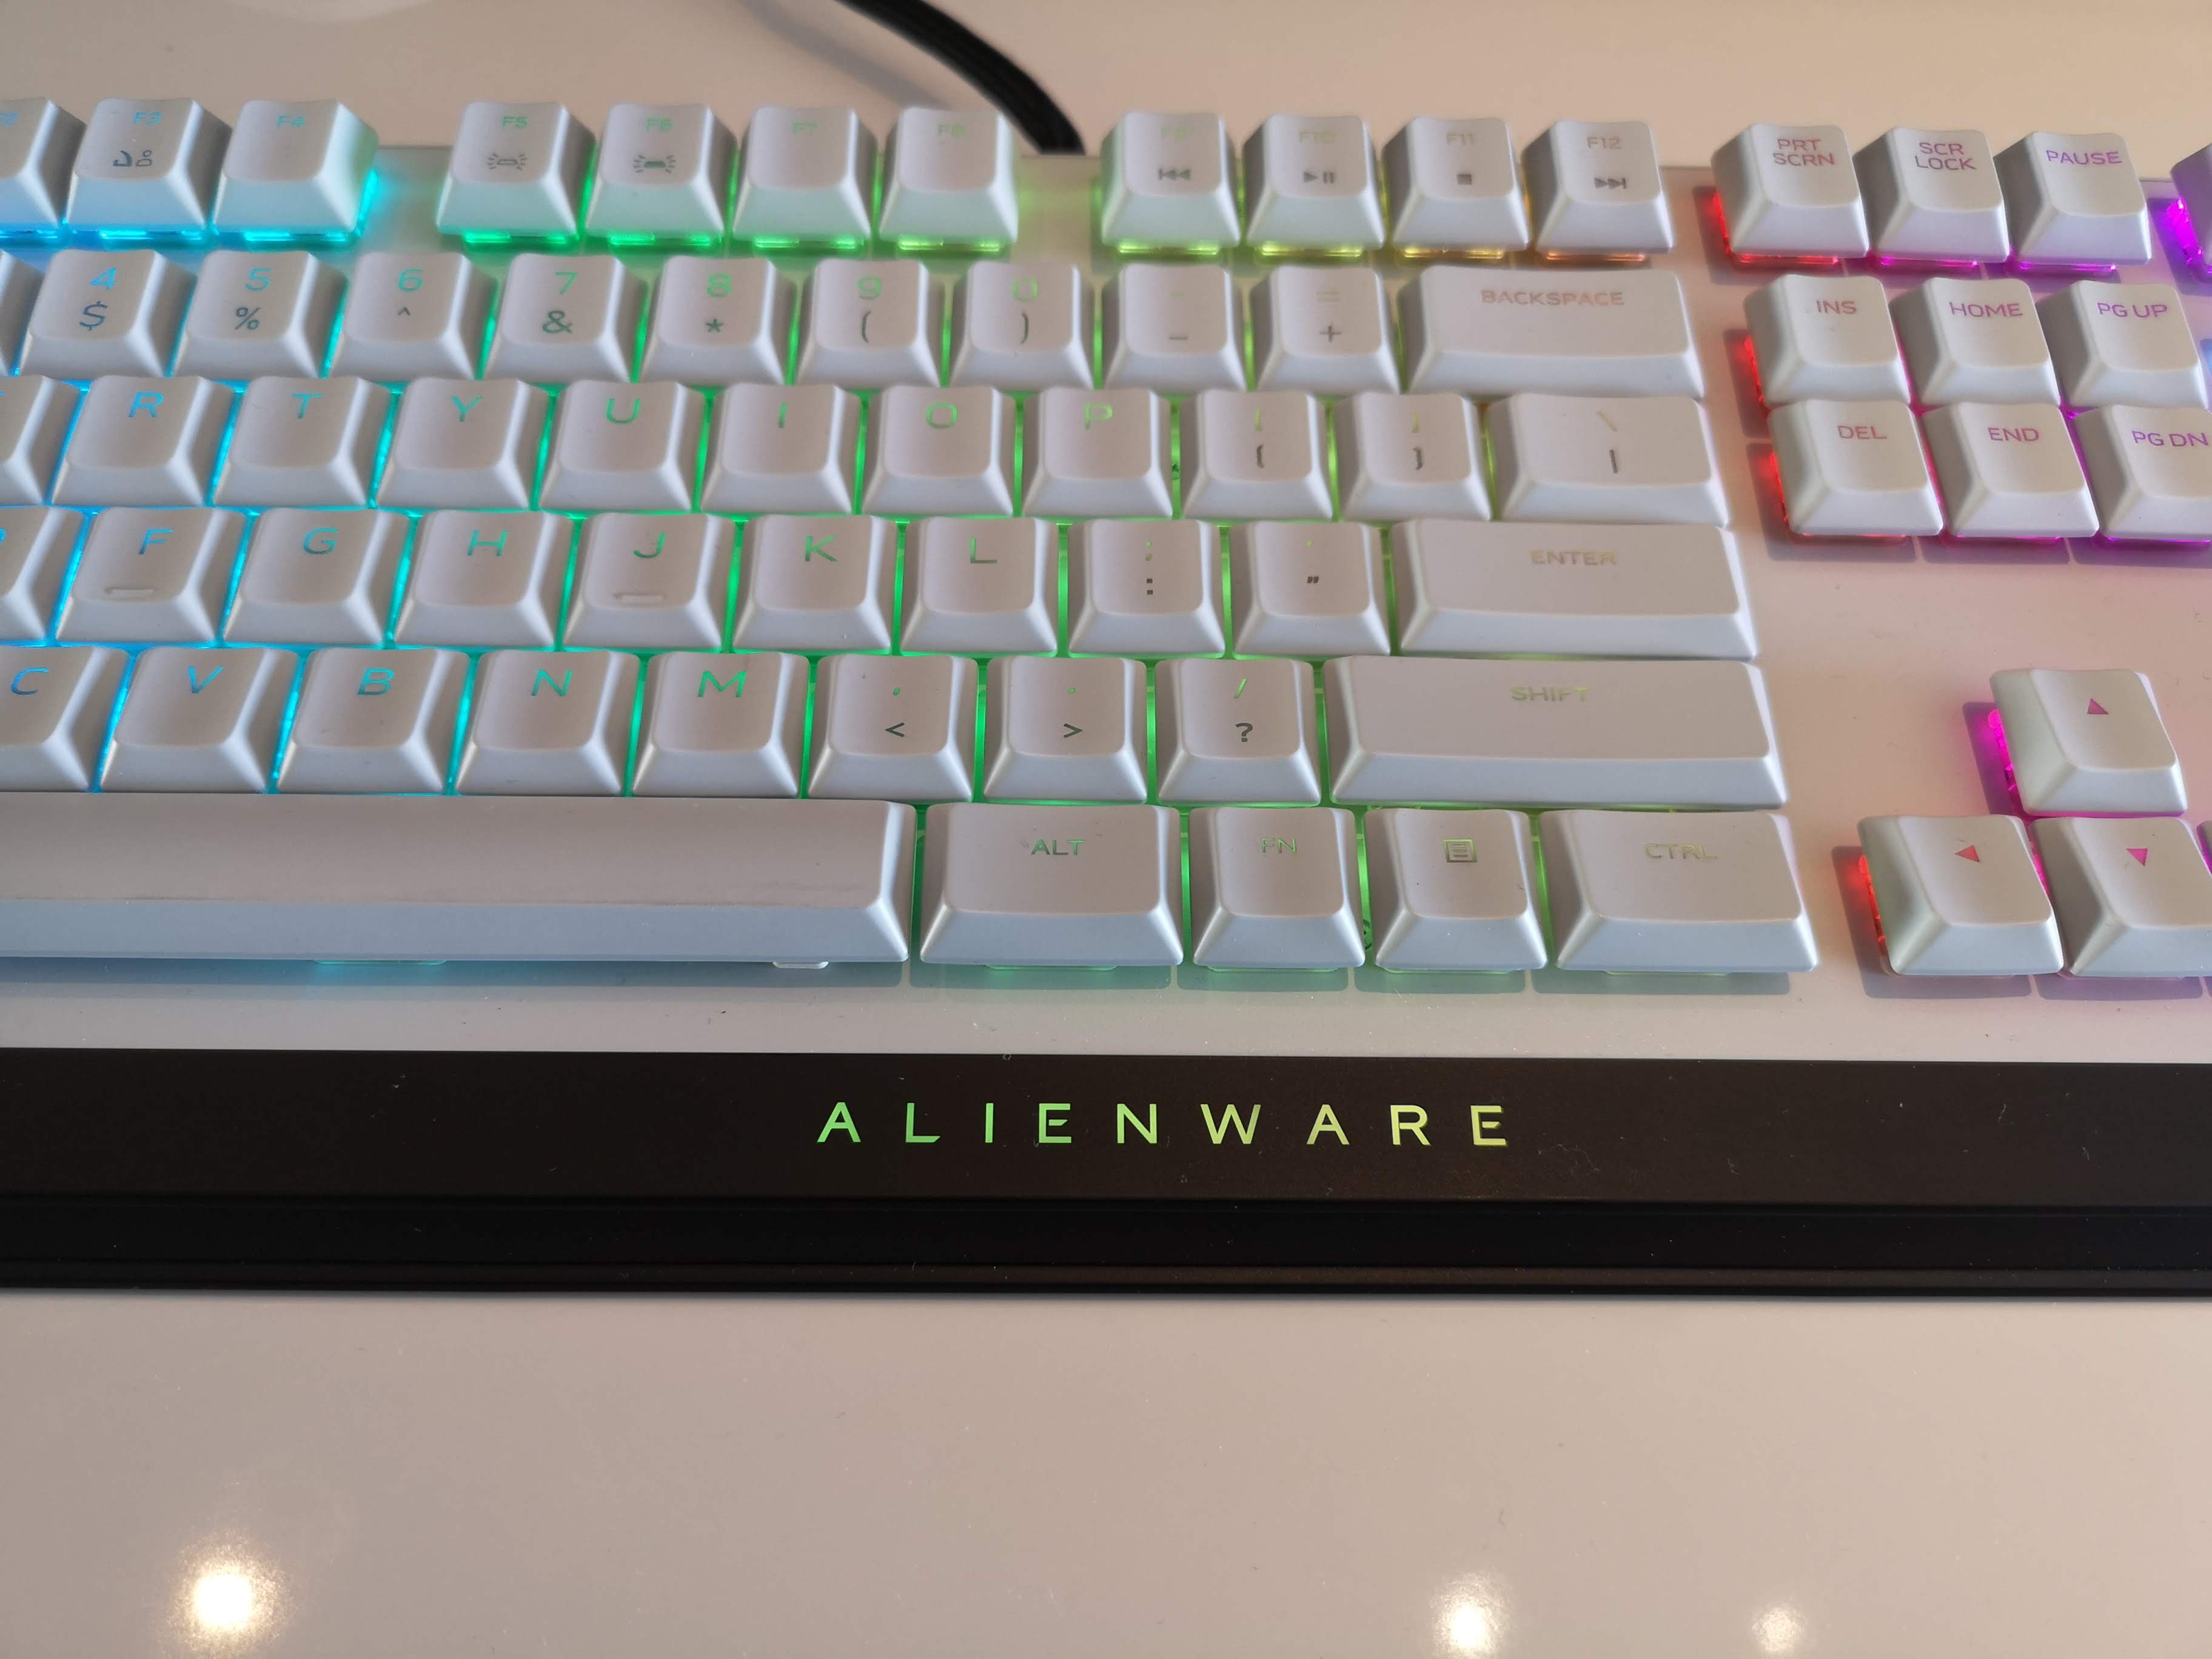 Alienware AW510K keyboard